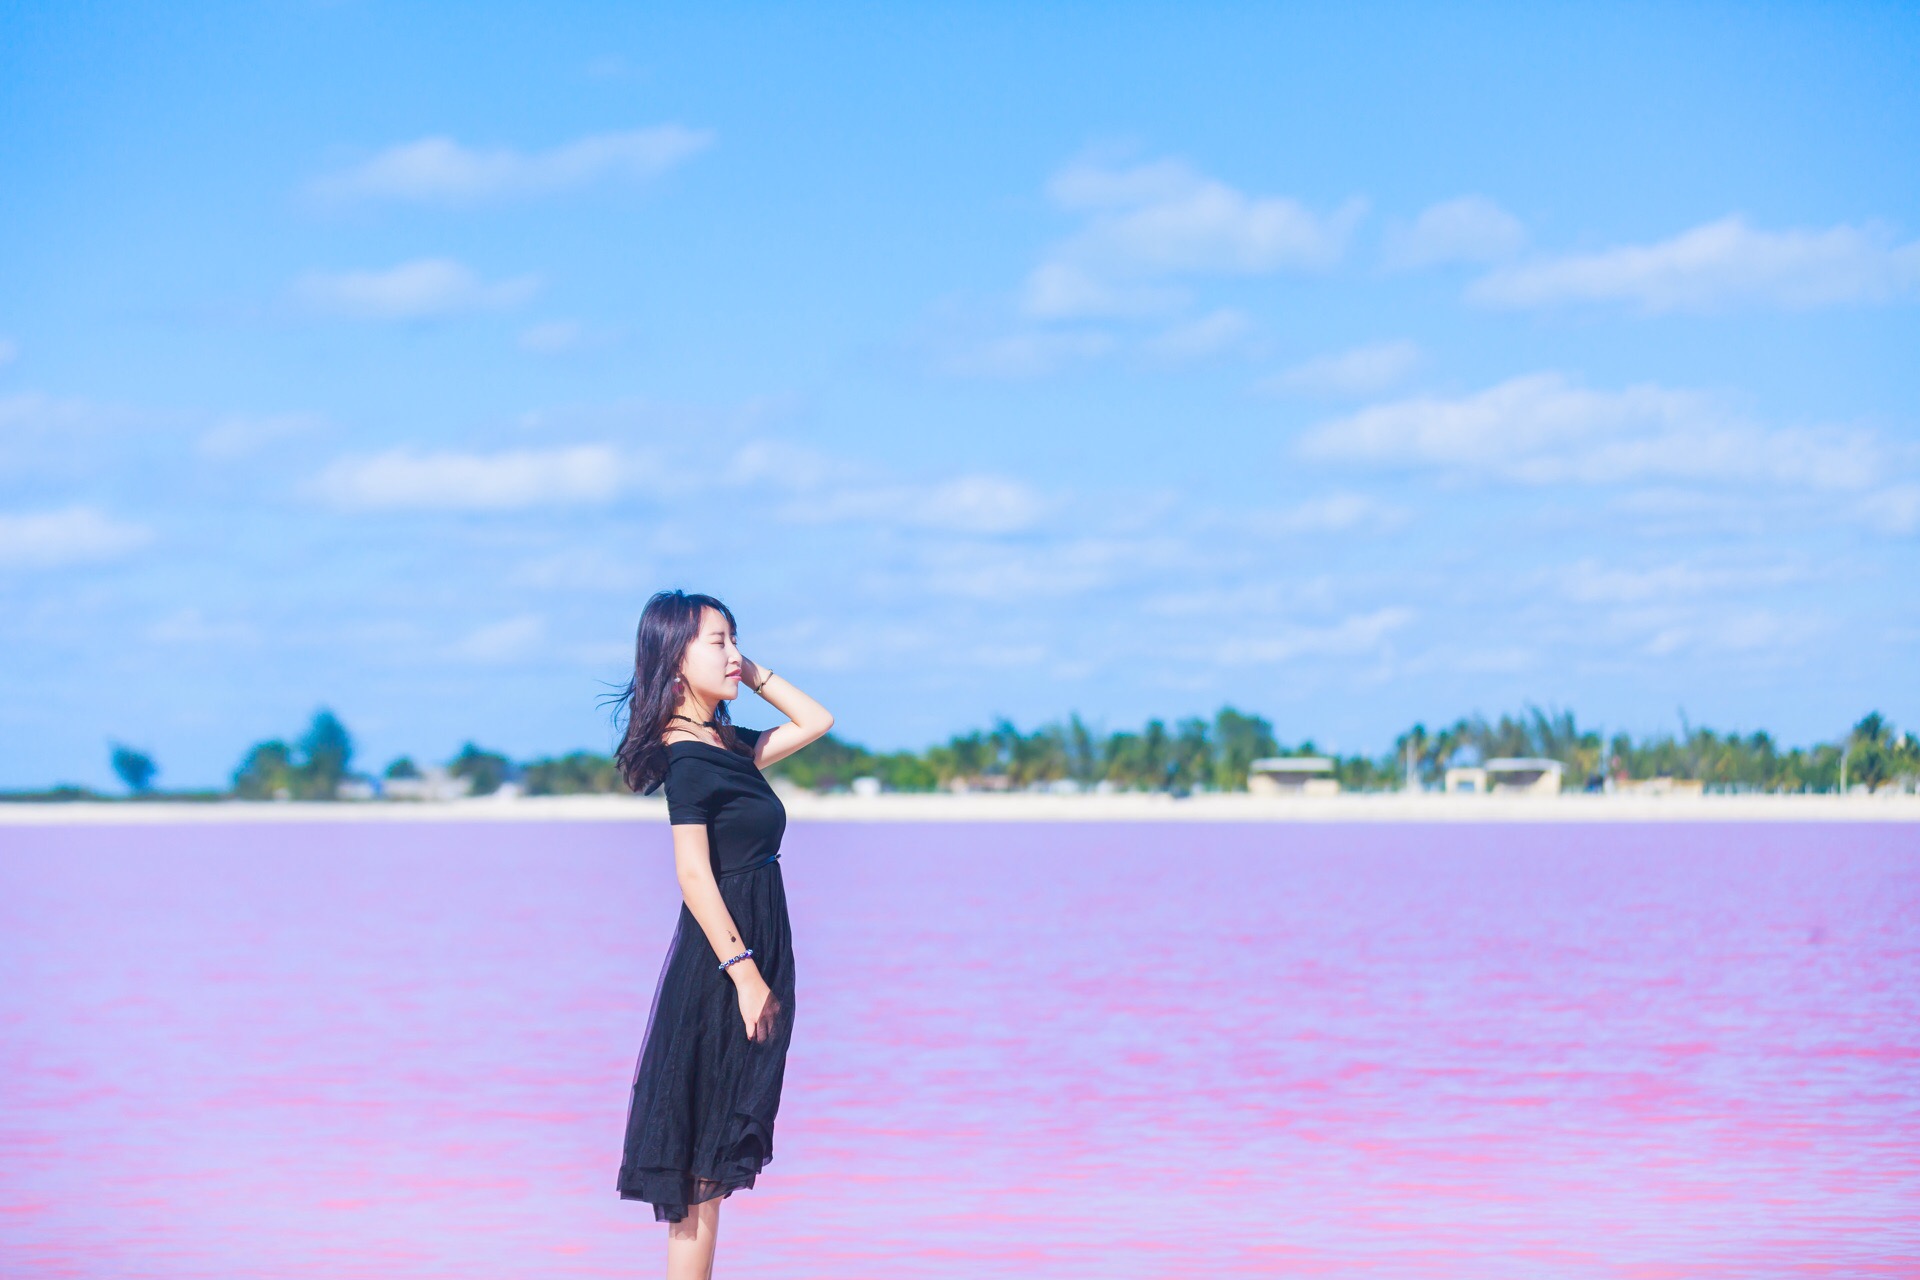 粉红湖 位于墨西哥 尤卡坦半岛 东岸的Las Coloradas，距离 坎昆 约270公里。这片淡粉